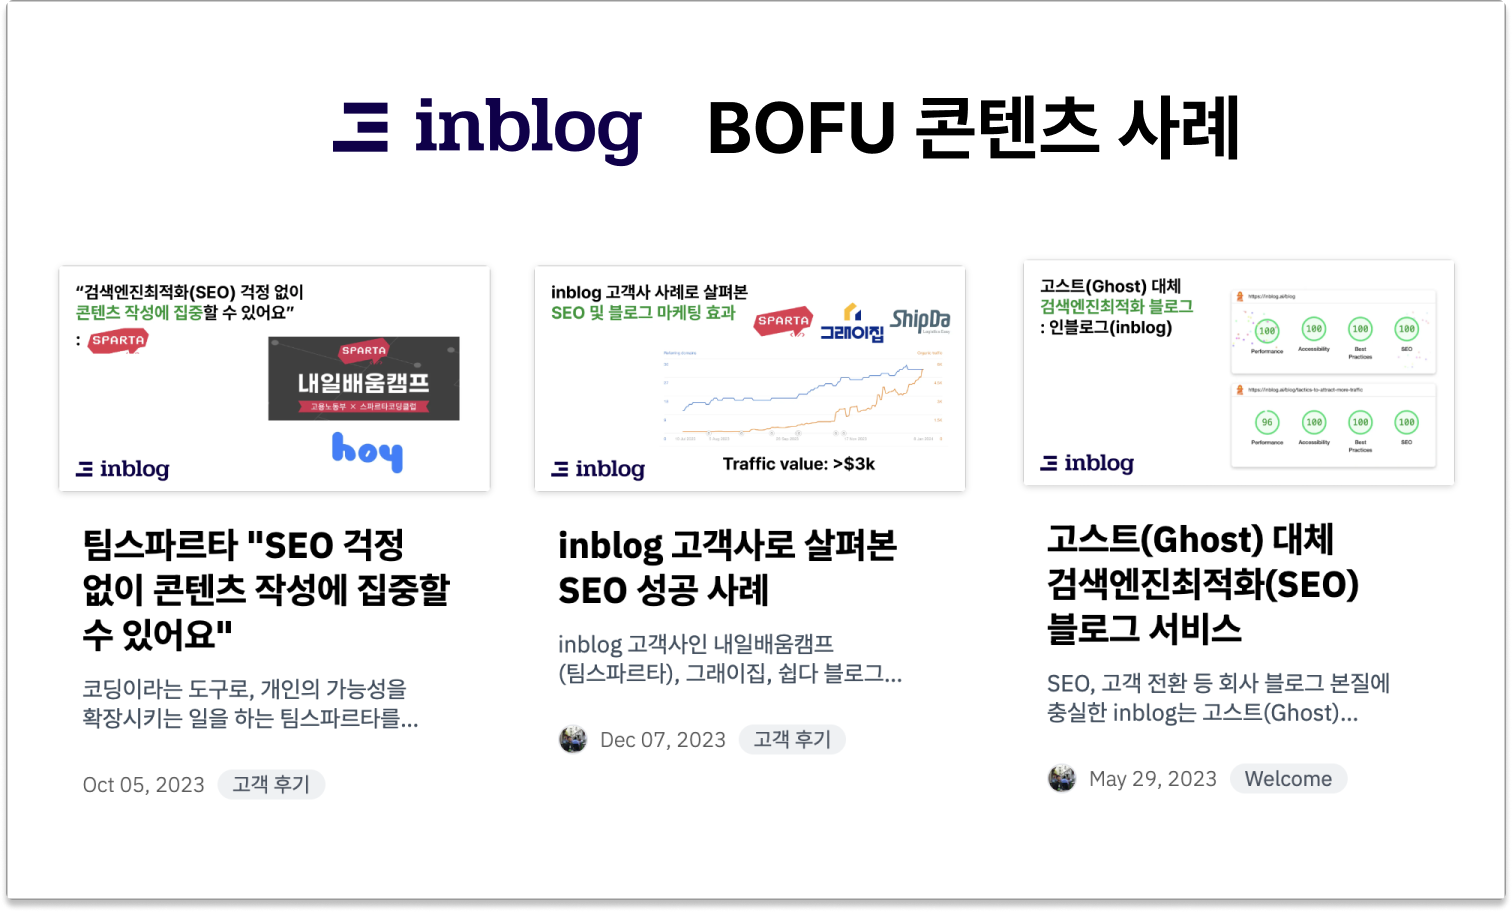 inblog bofu case